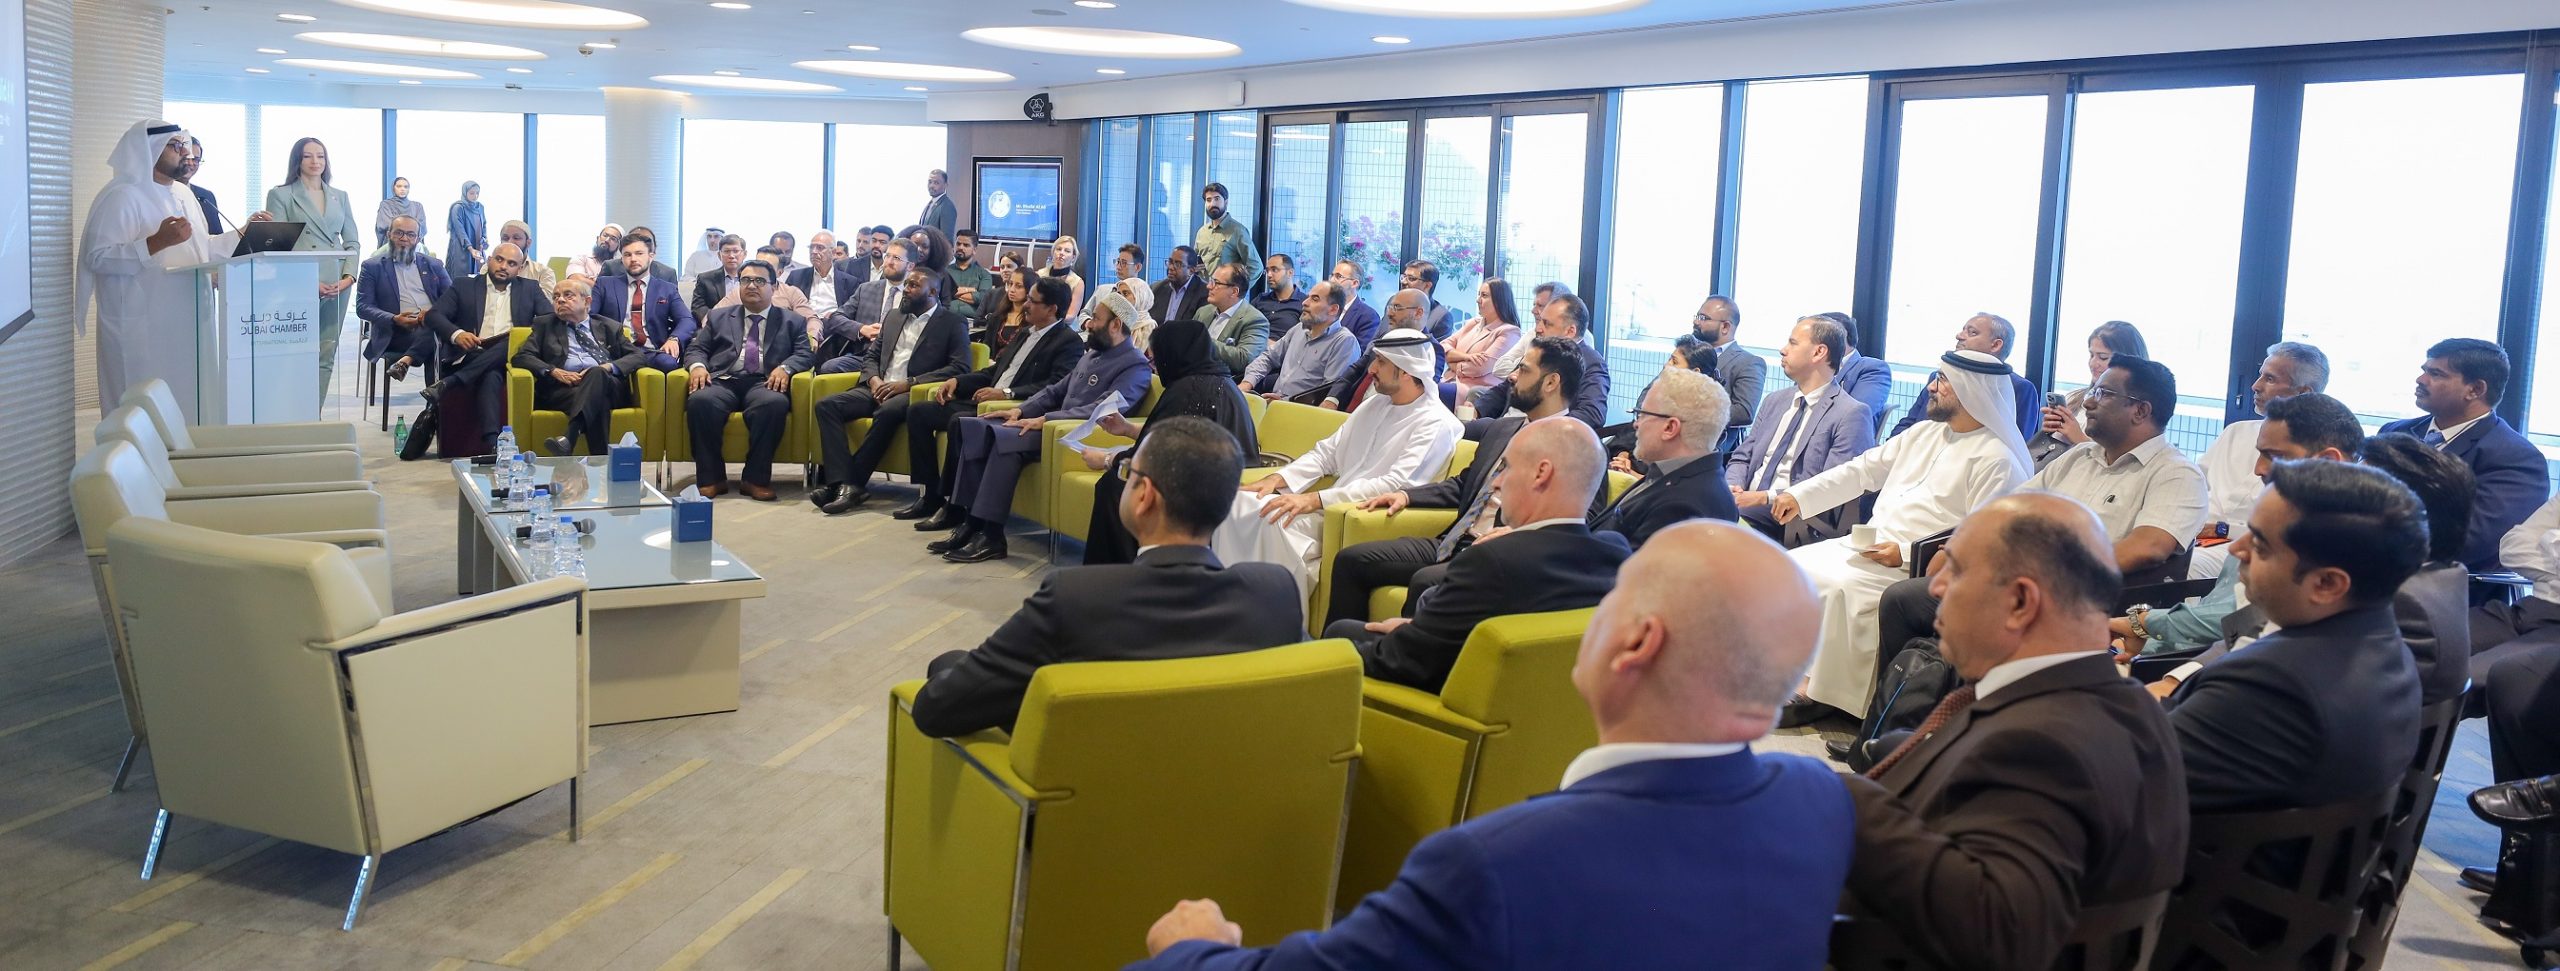 غرفة دبي العالمية تنظم الفعالية الثانية من سلسلة التوسع العالمي لدعم شركات الإمارة في تعزيز نشاطاتهم الخارجية